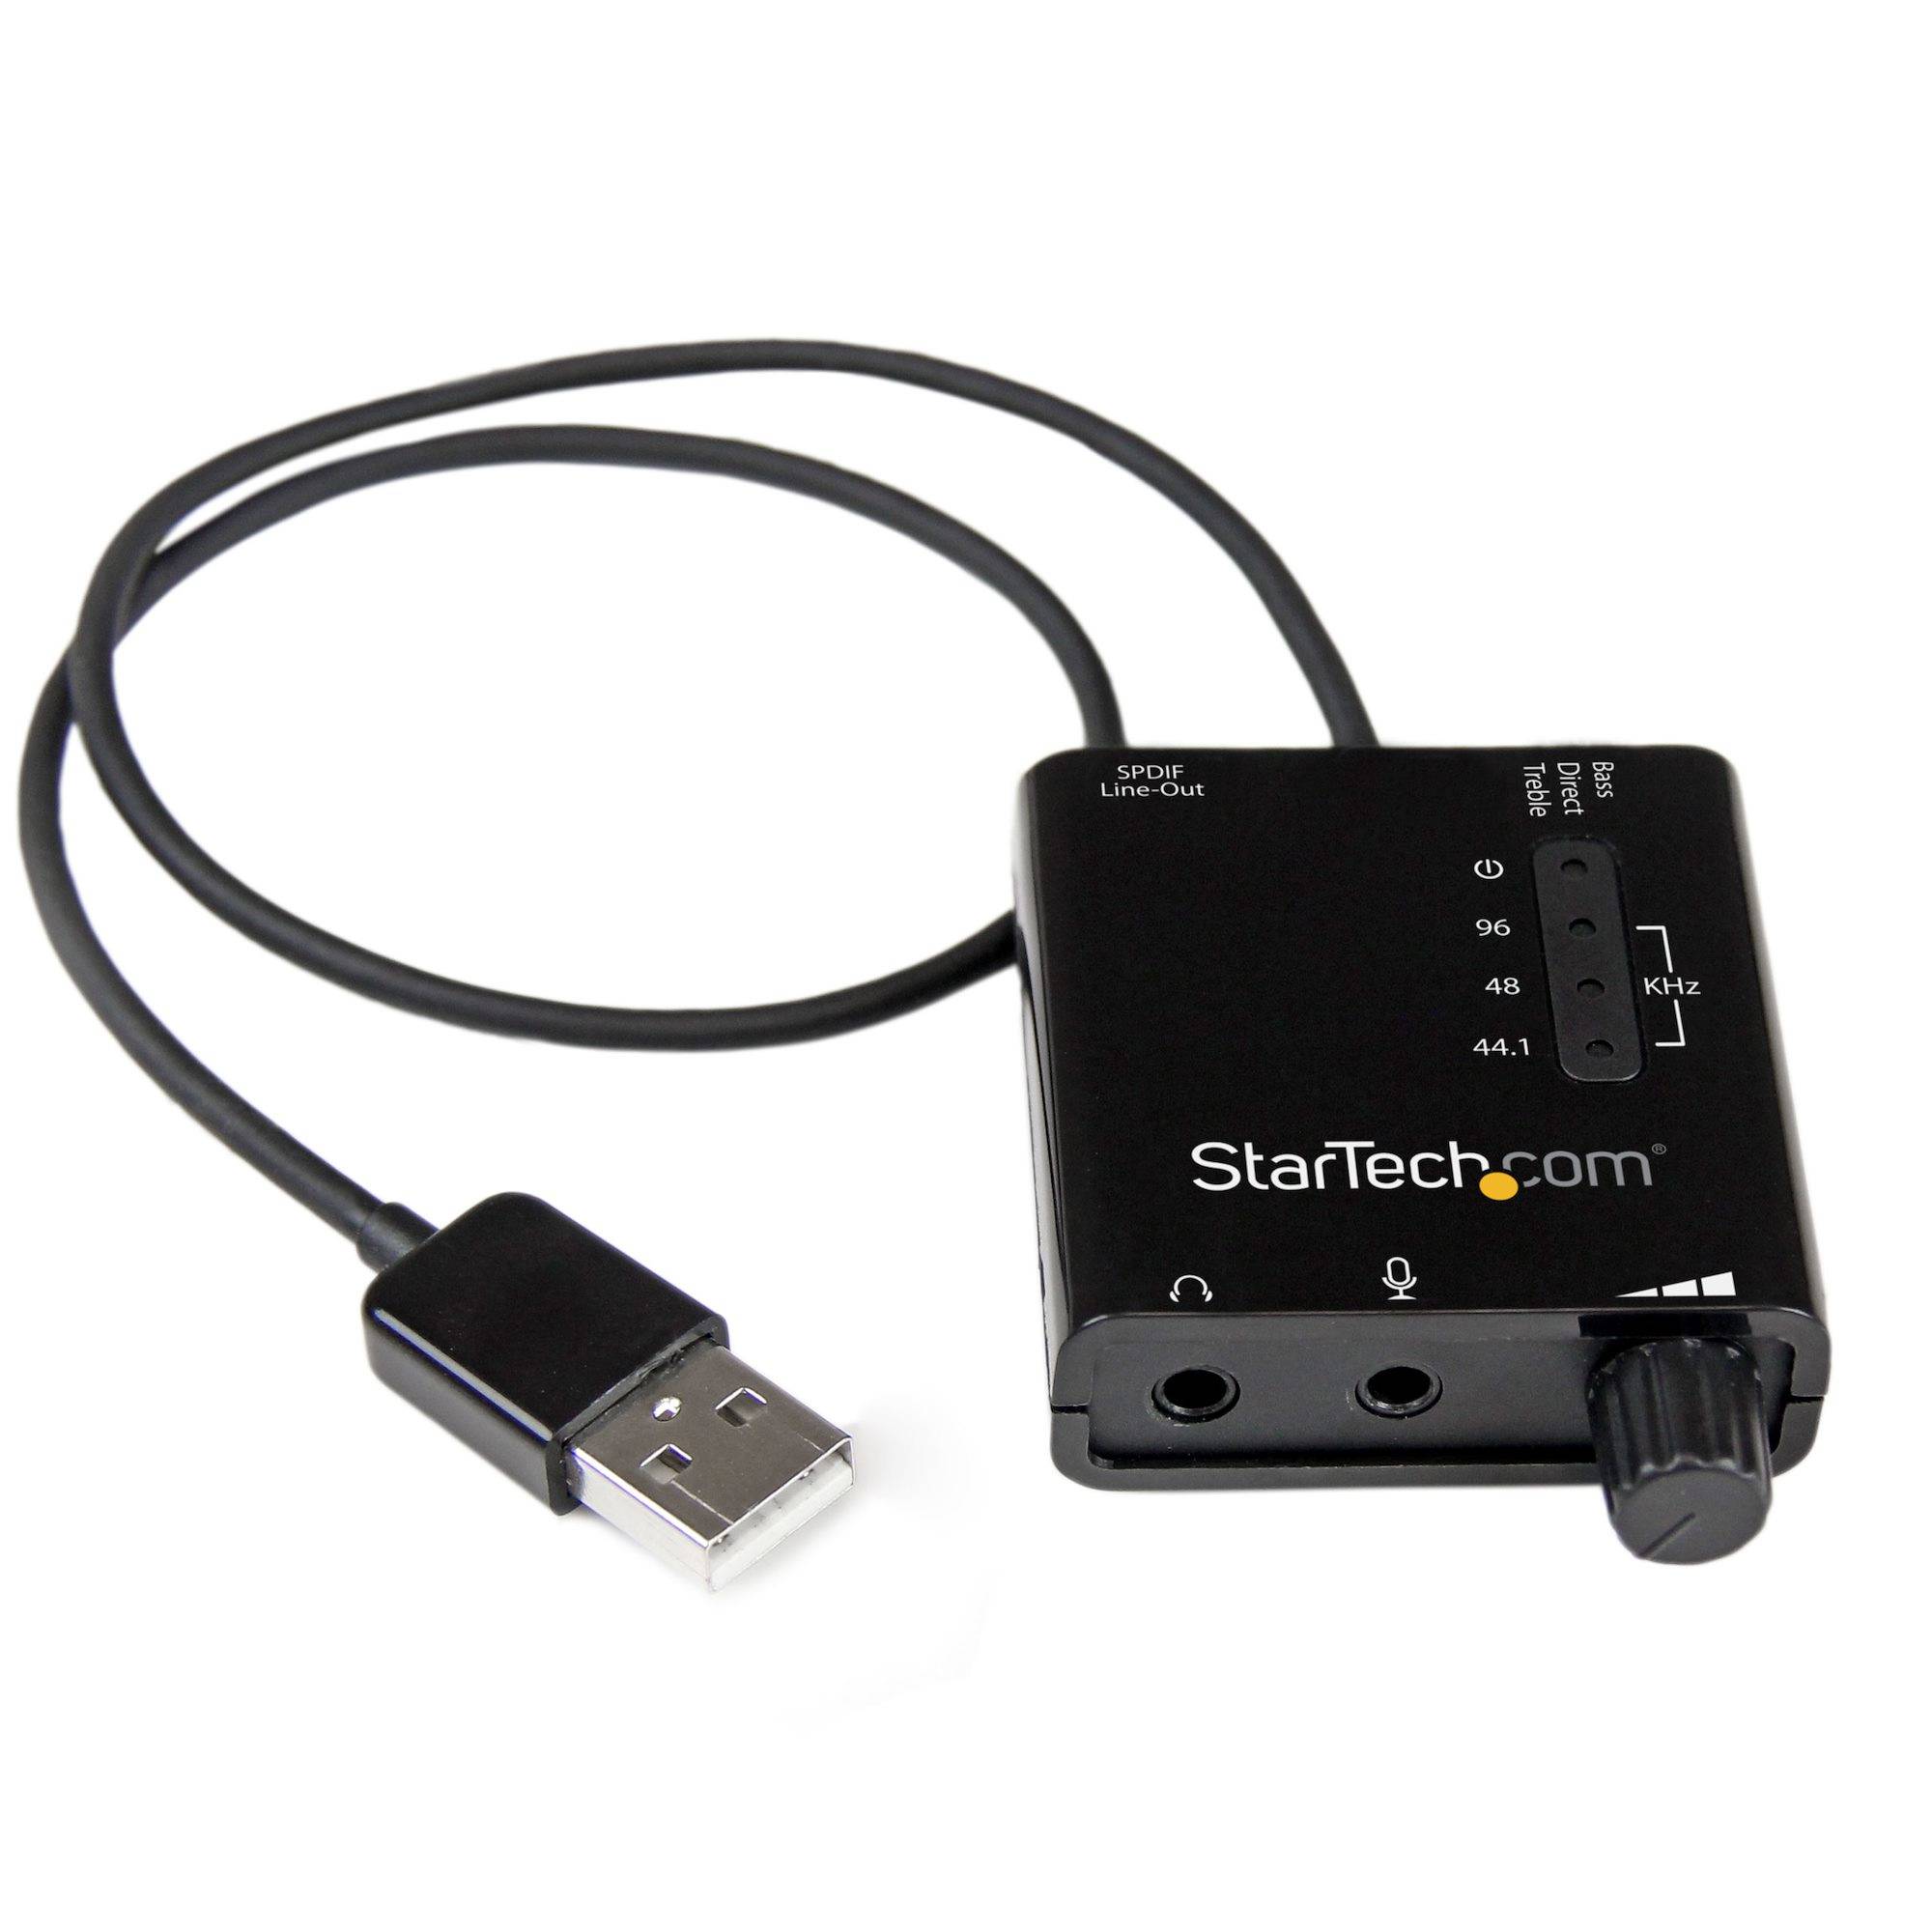 Rca Informatique - Image du produit : USB TO AUDIO CONVERTER EXTERNAL SPDIF SOUND CARD